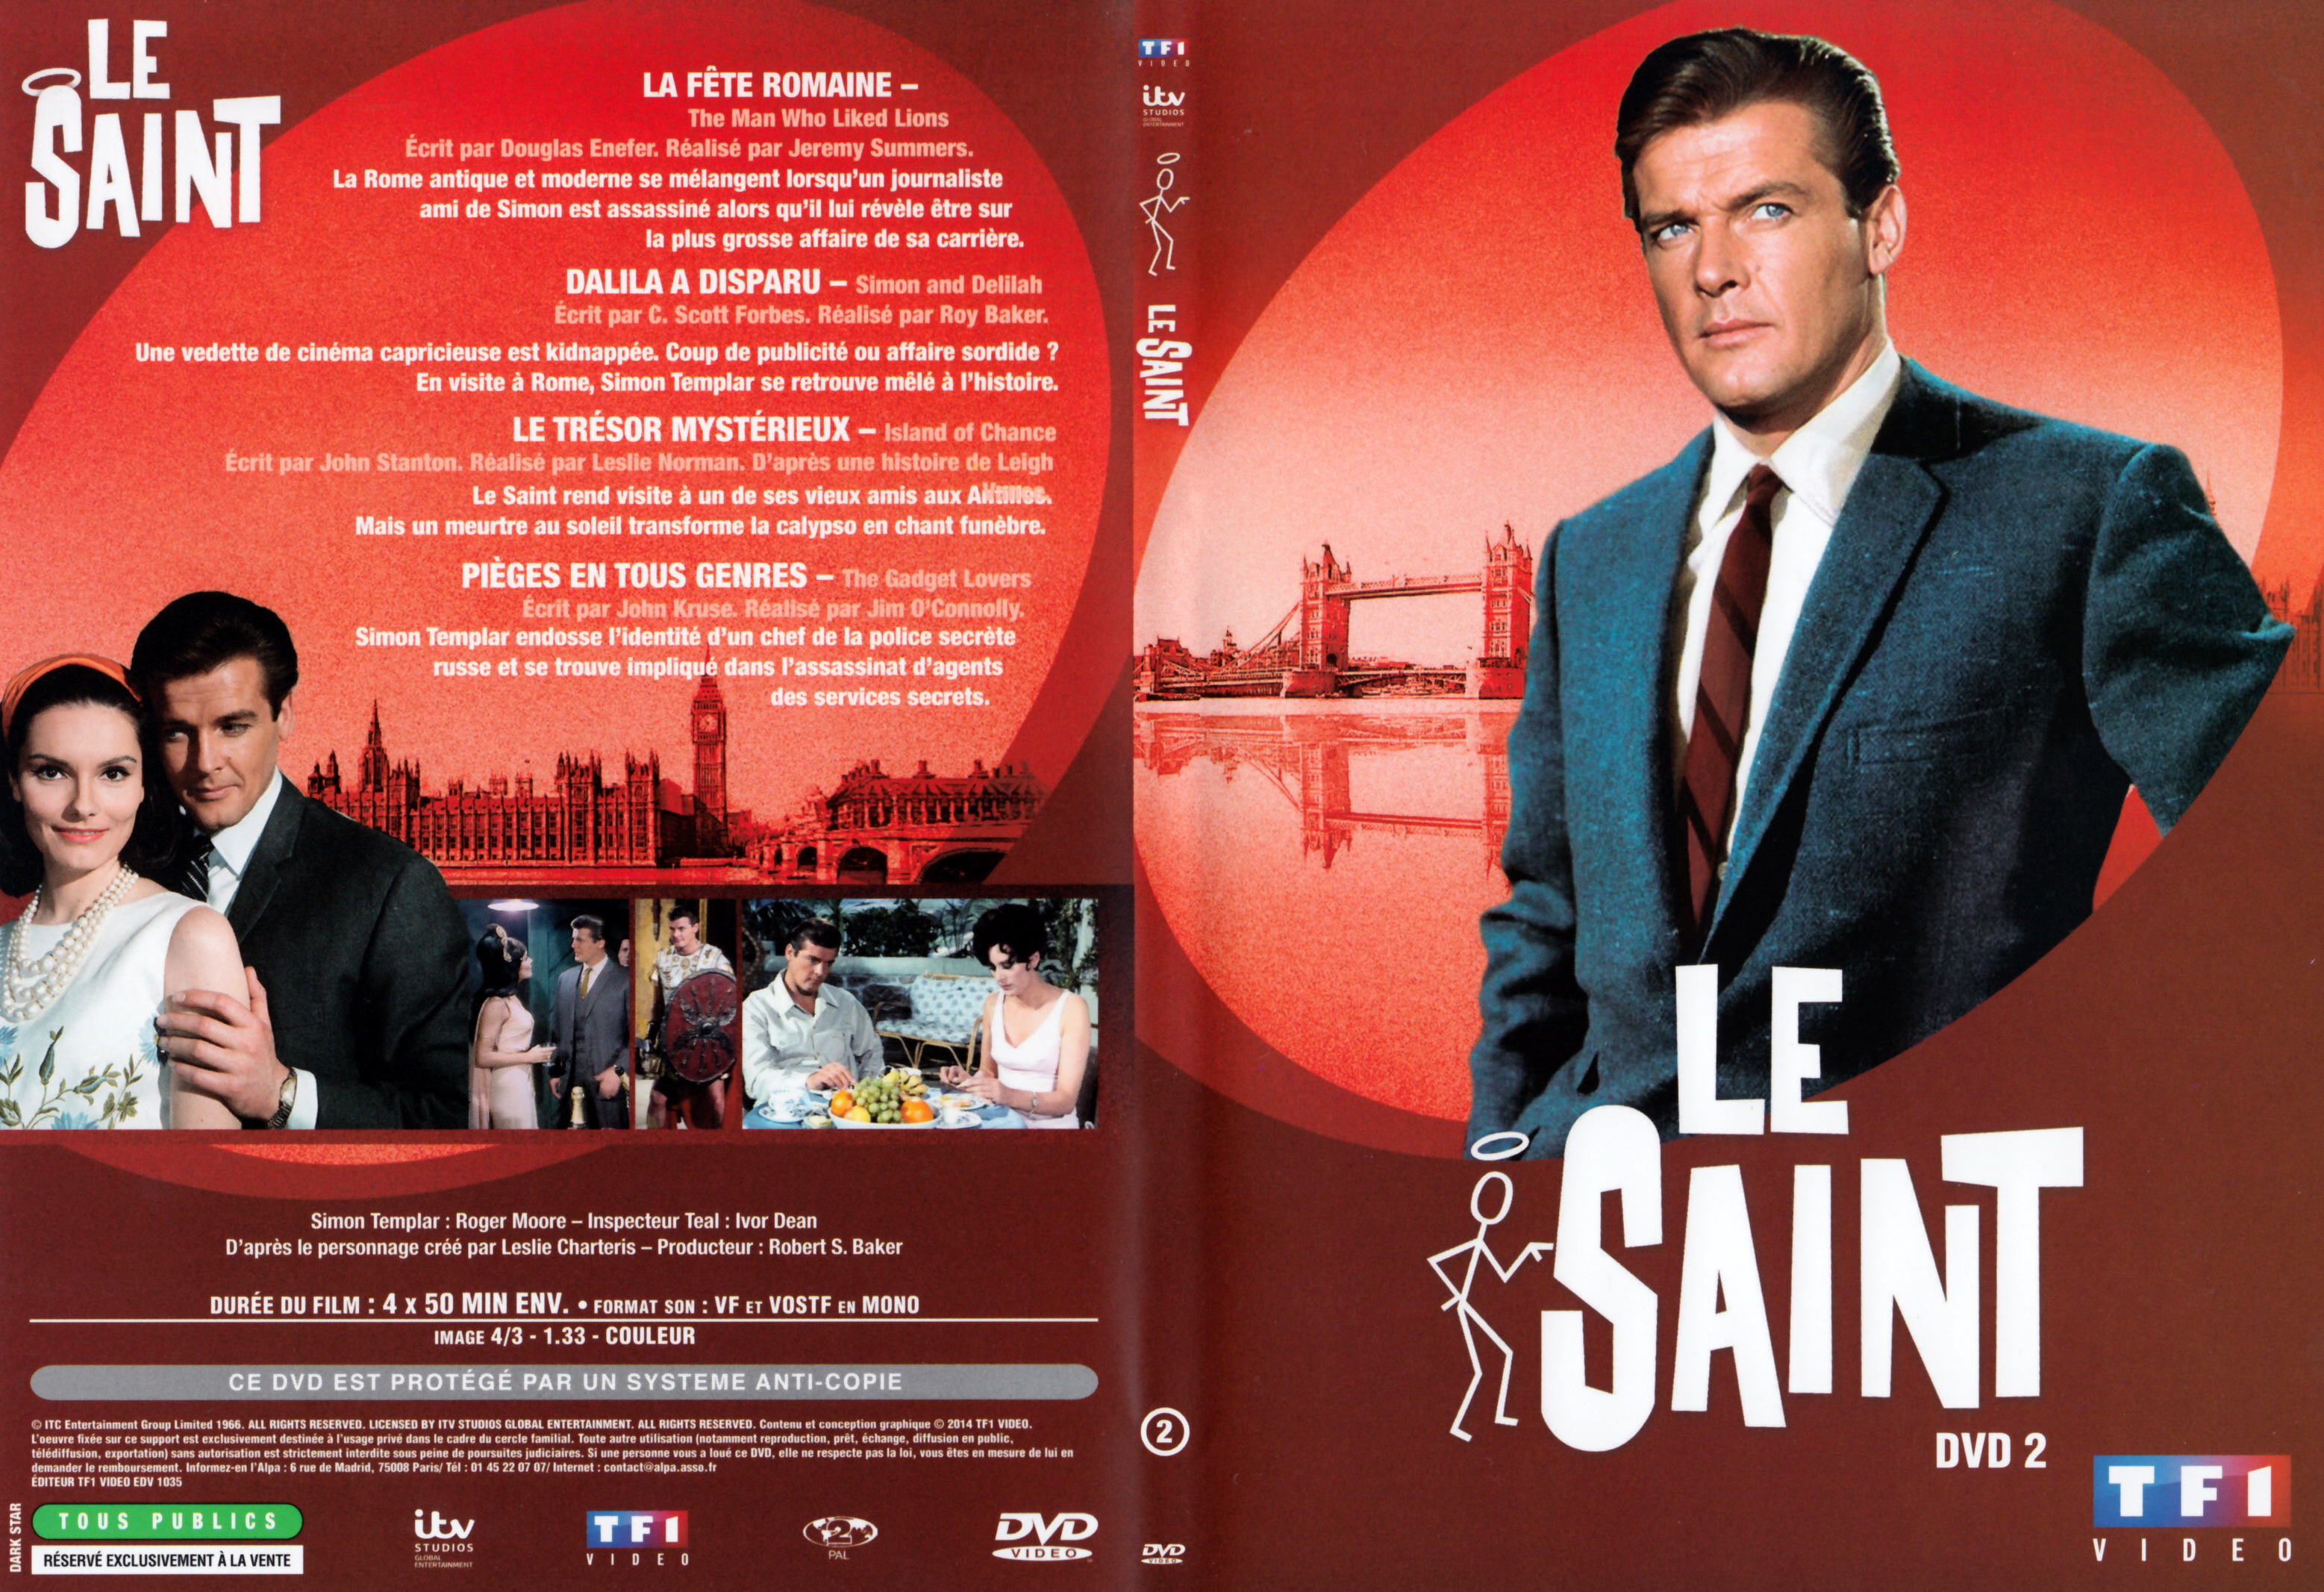 Jaquette DVD Le saint Saison 5 DVD 2